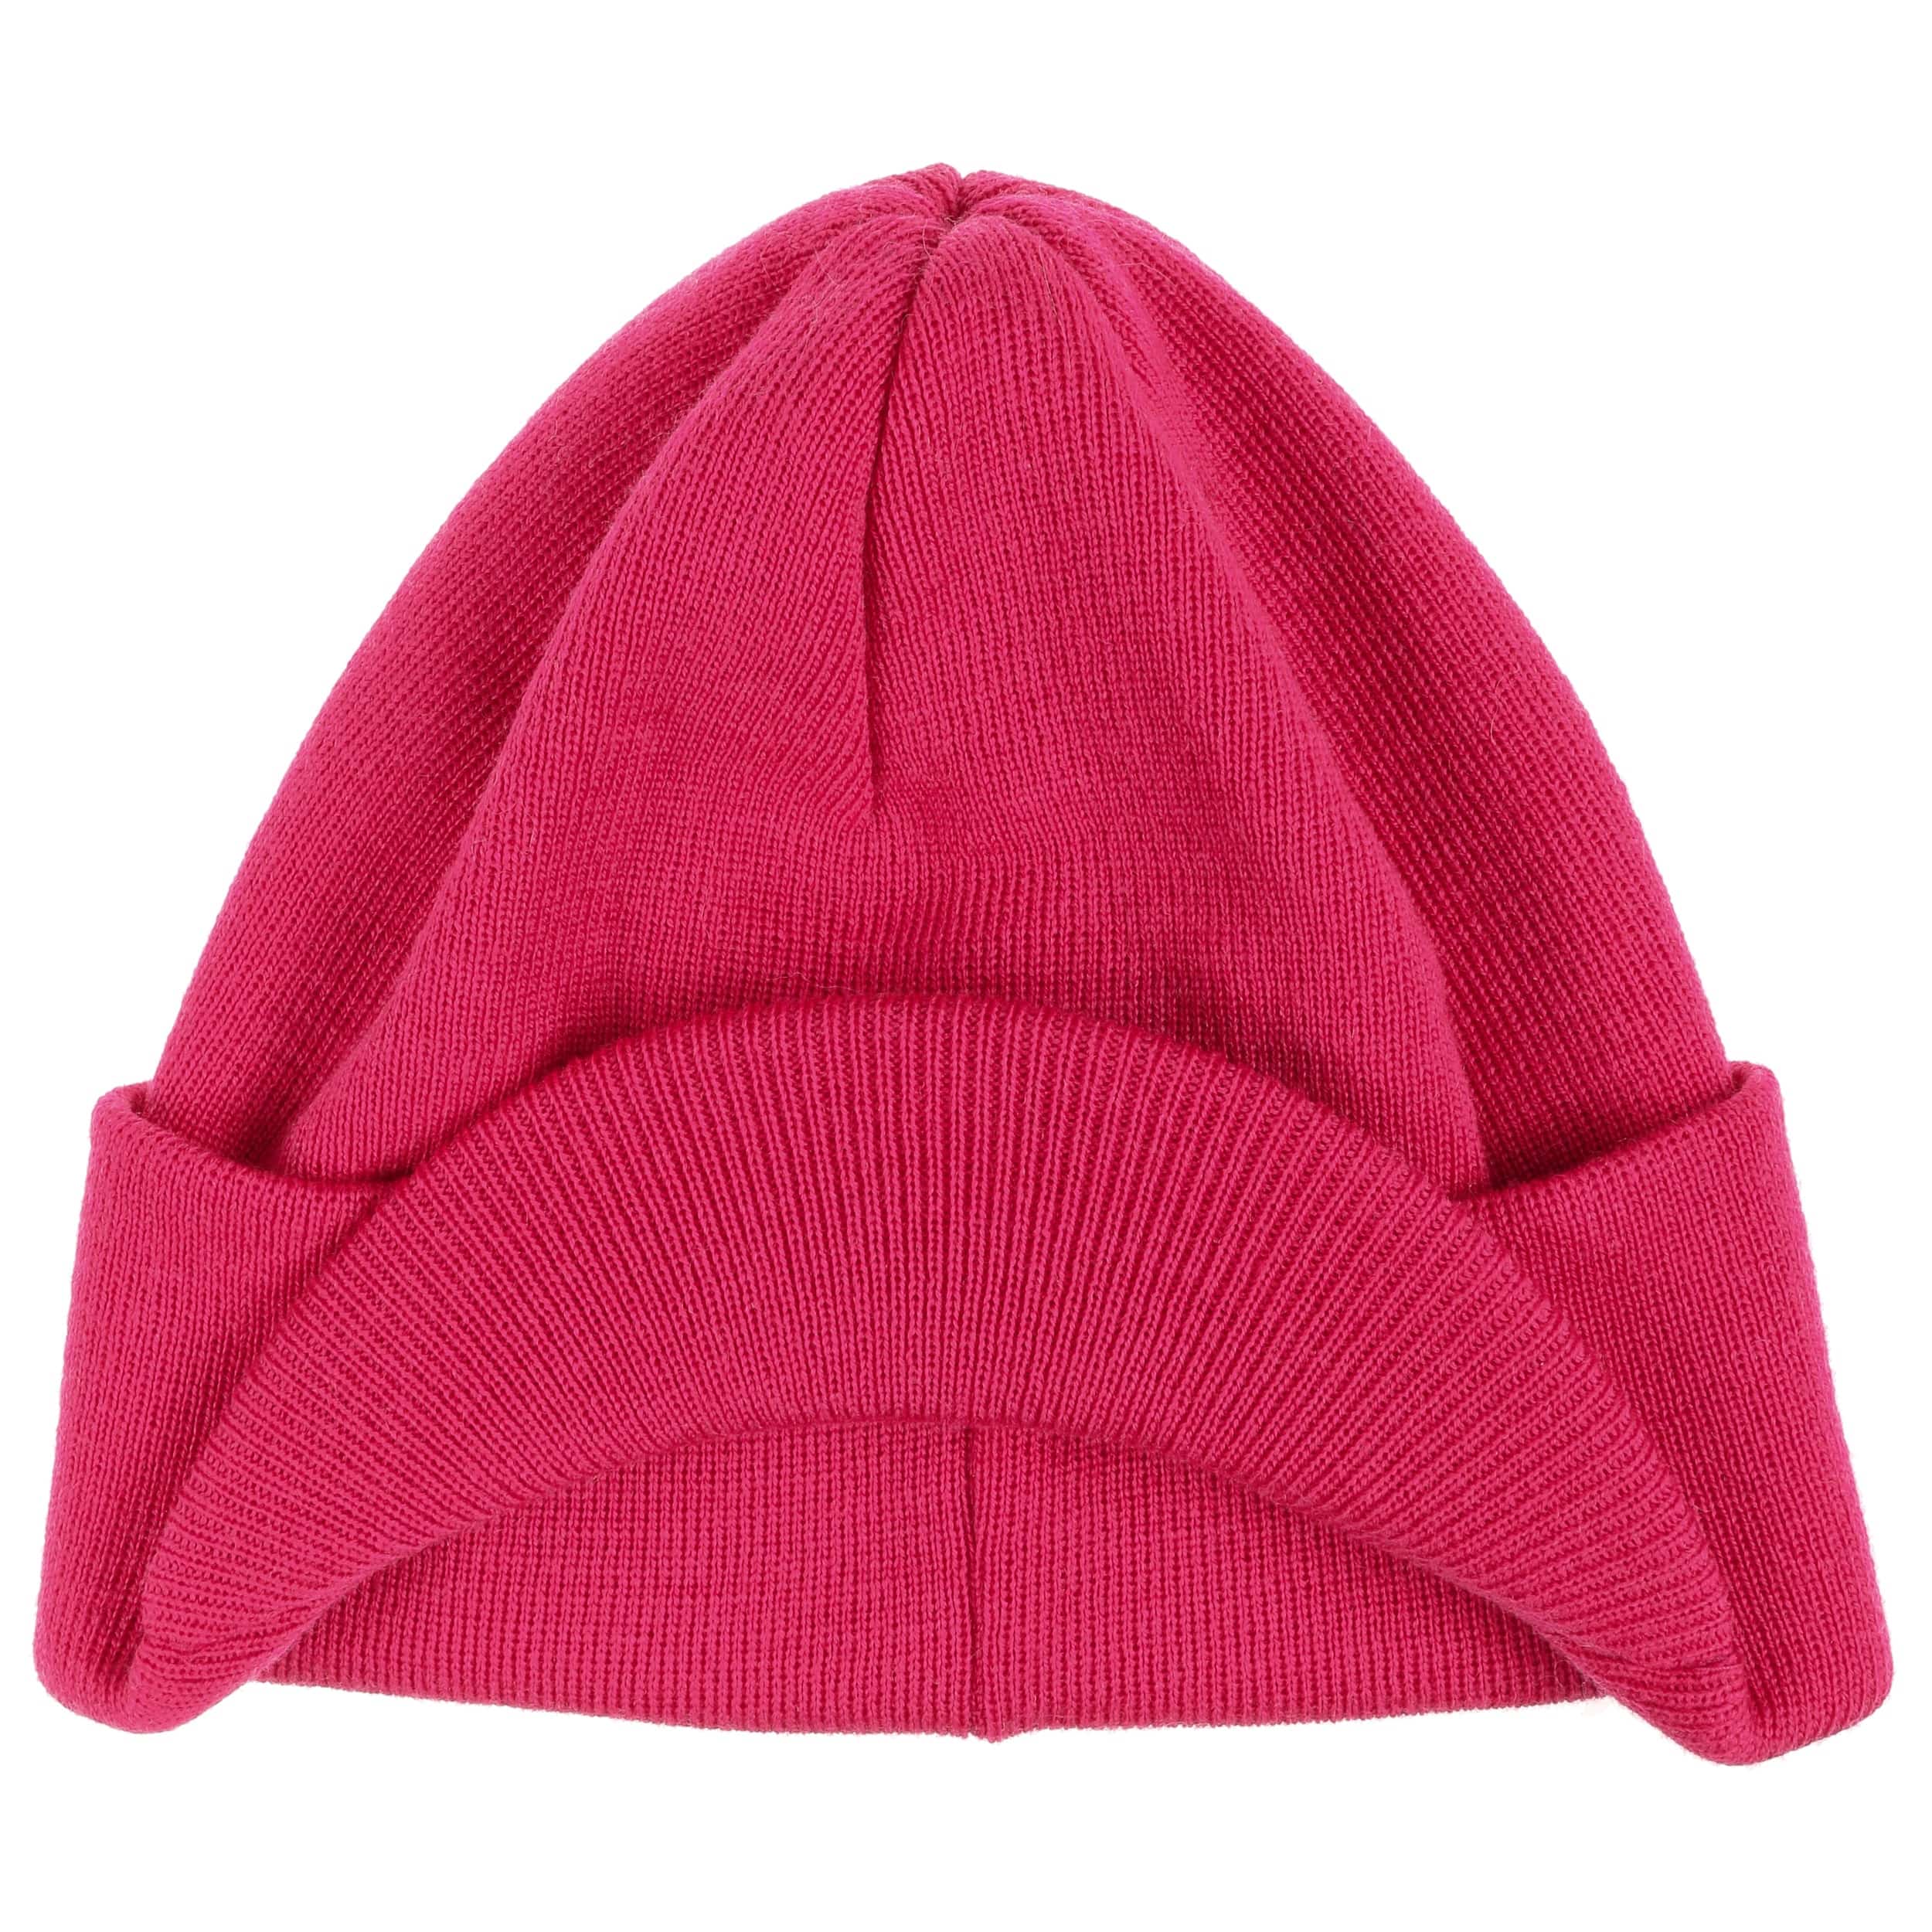 Accessori Cappelli e berretti Cappelli invernali Cappelli stile aviatore Grigio e rosa stripe cappello 